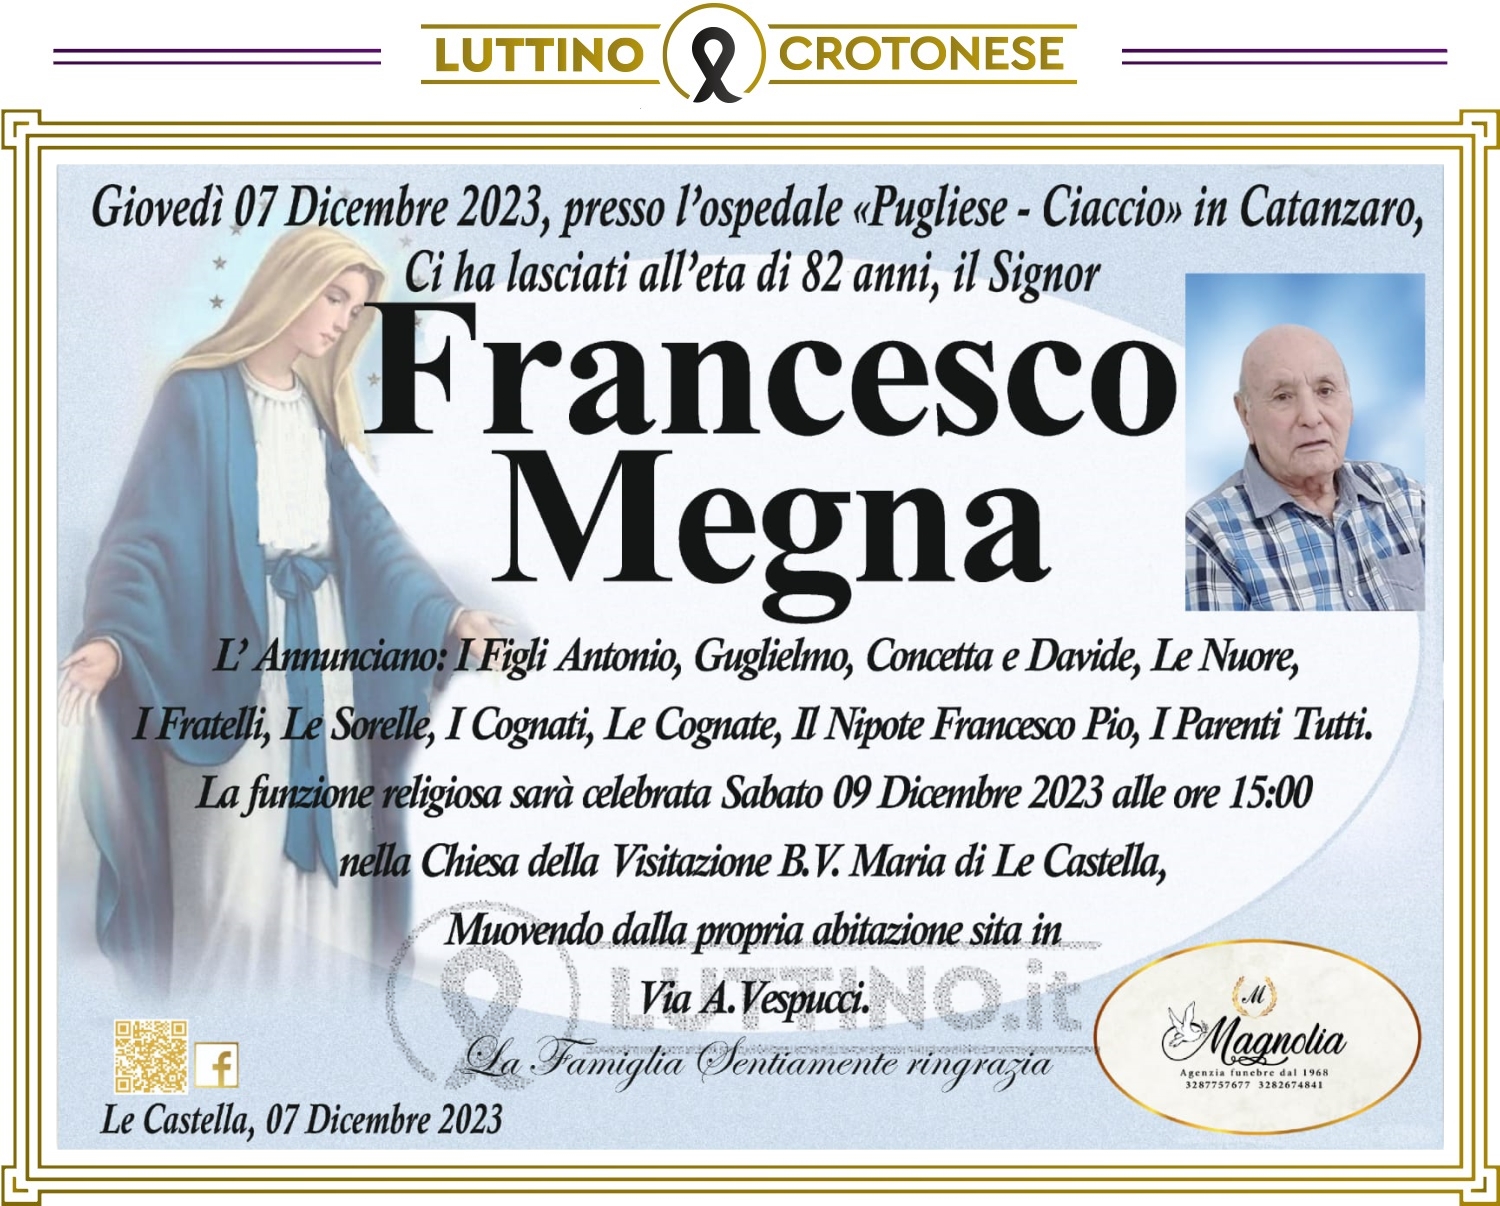 Francesco Megna